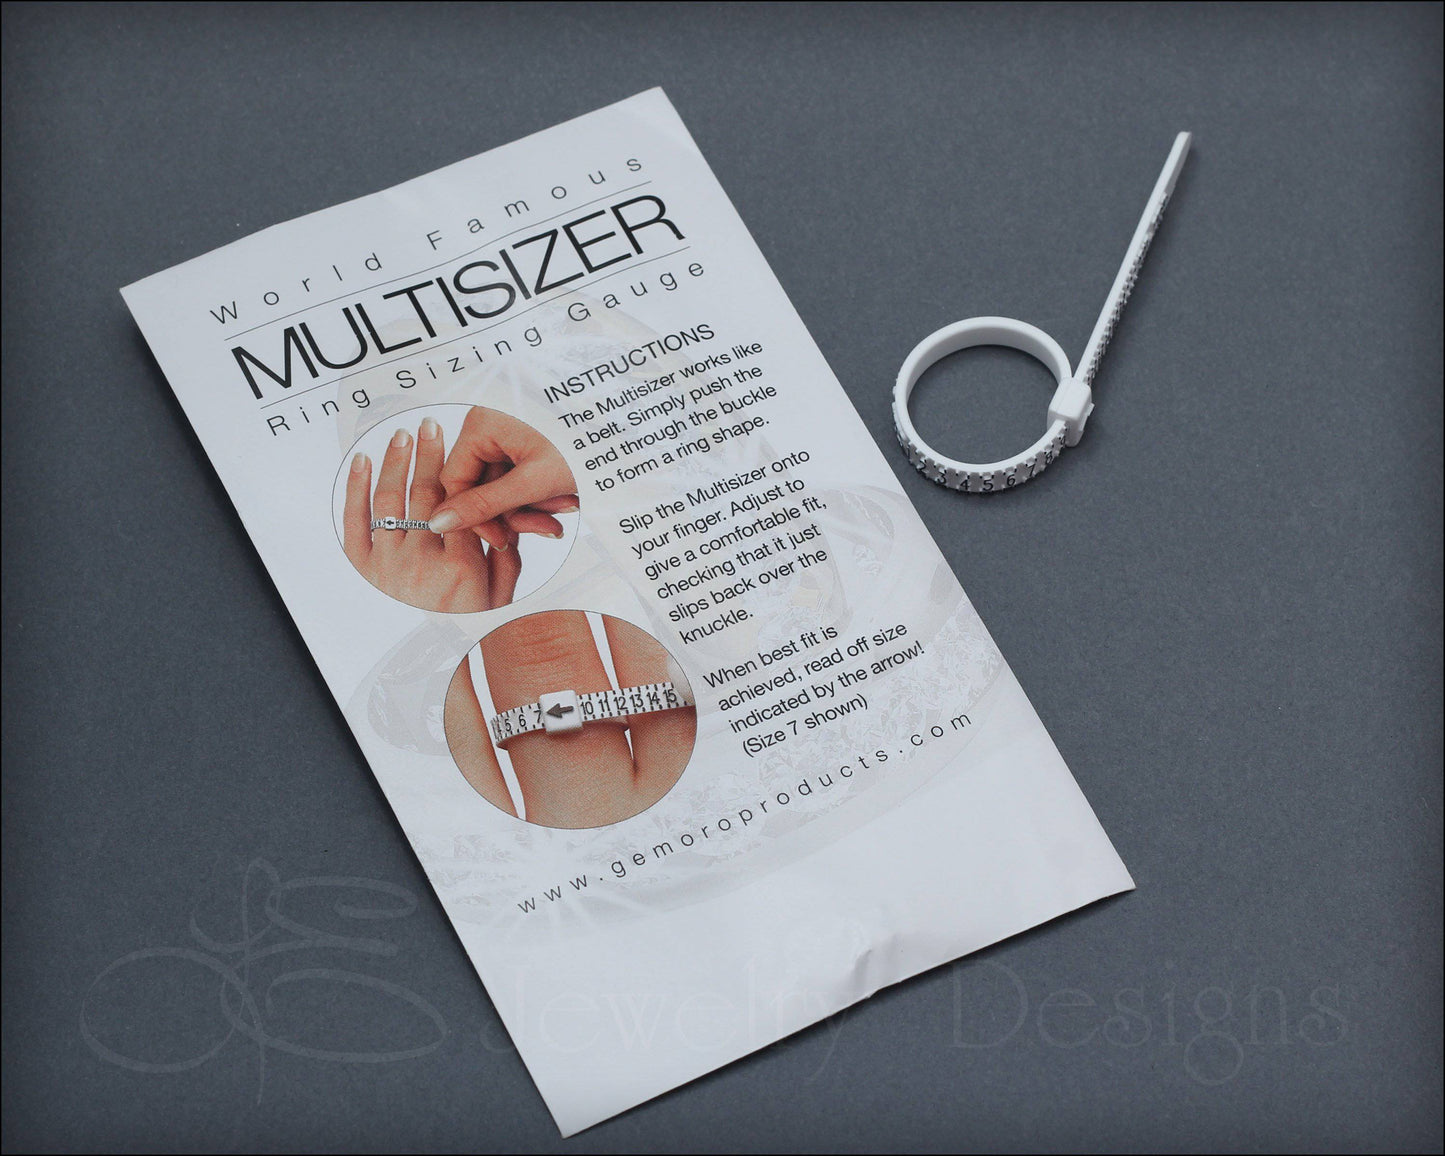 Multisizer Ring Measurer to Determine the Ring Size/finger